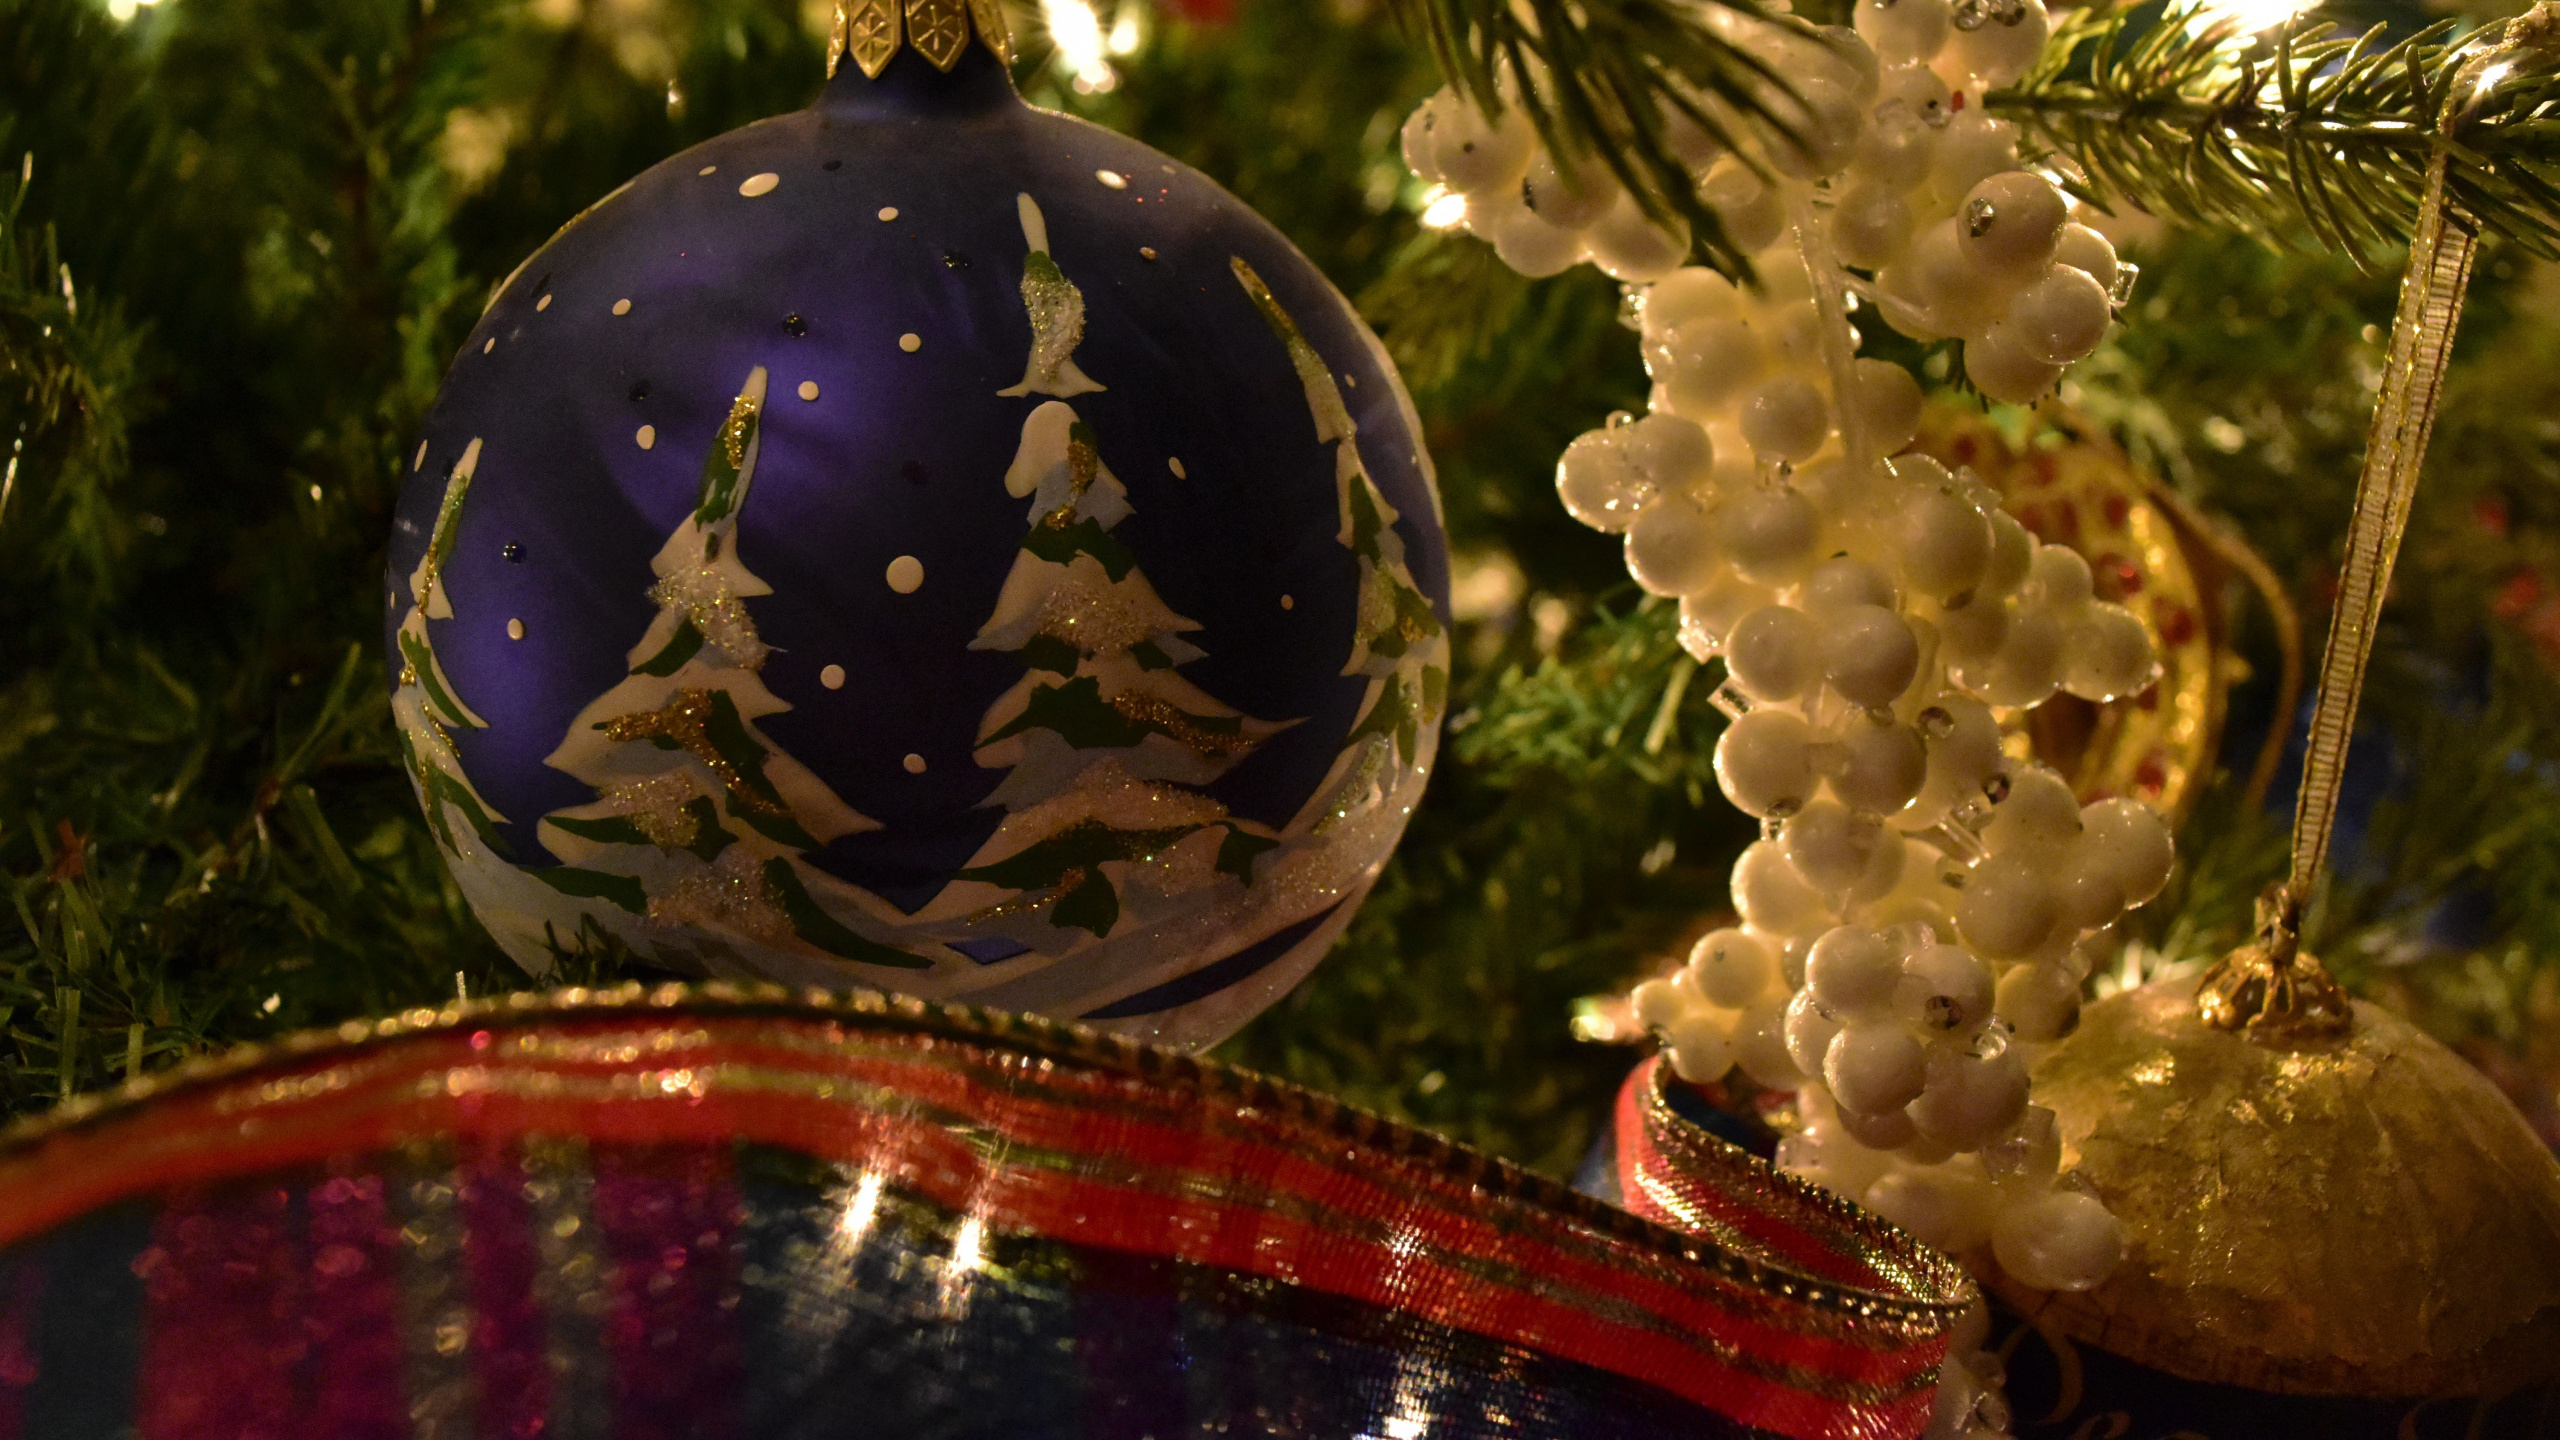 圣诞节那天, 新的一年的树, 圣诞树, 新的一年, 圣诞节的装饰品 壁纸 2560x1440 允许